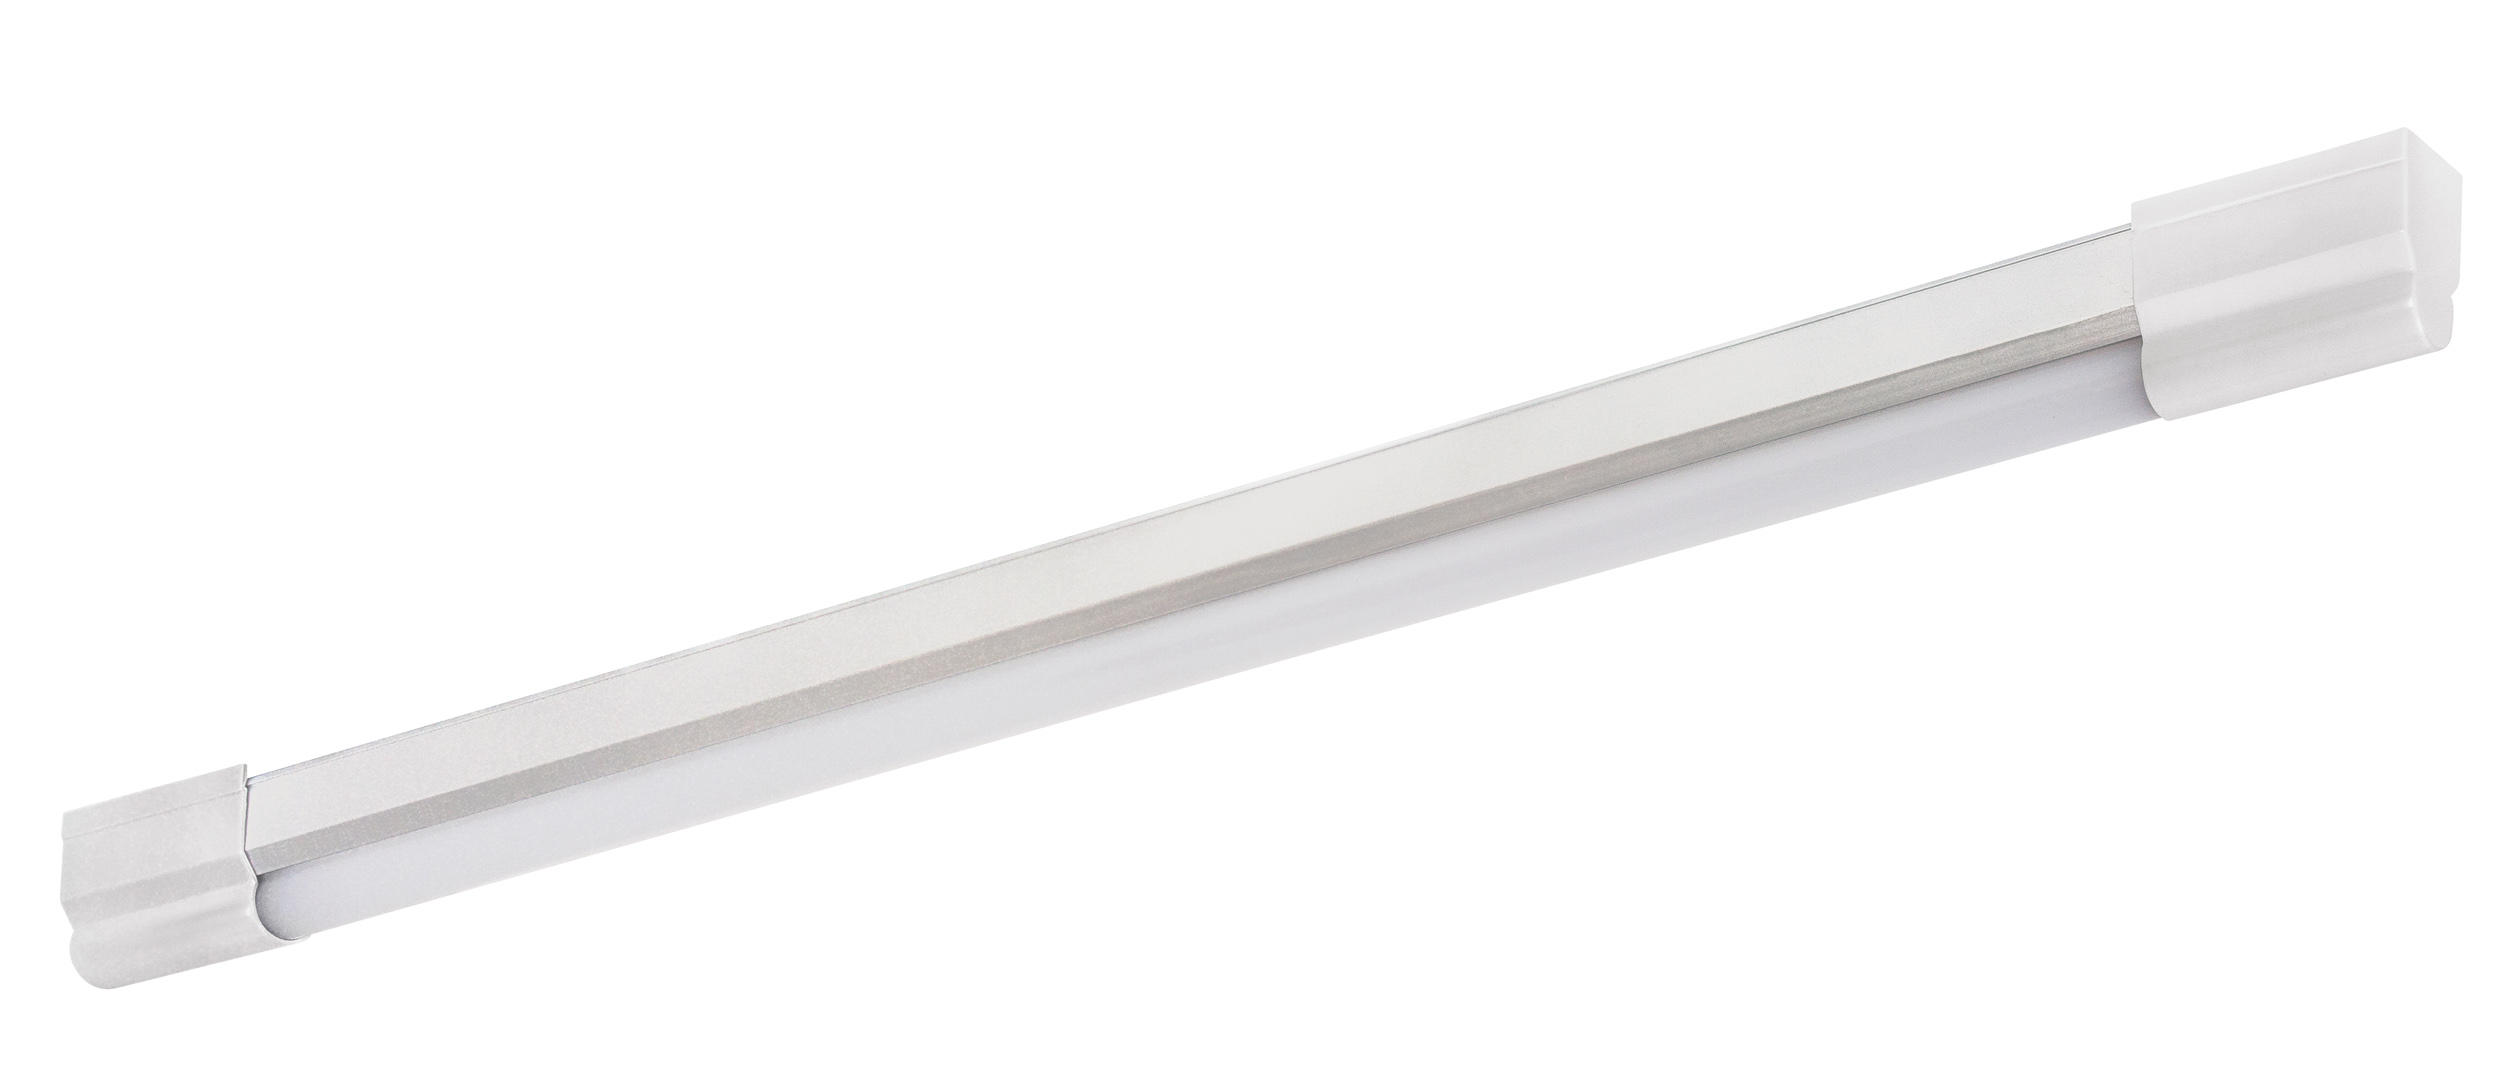 Müller Licht LED Unterbauleuchte Arax 70cm Weiß 7W 700lm 4000K (Kaltweiß) mit Schalter